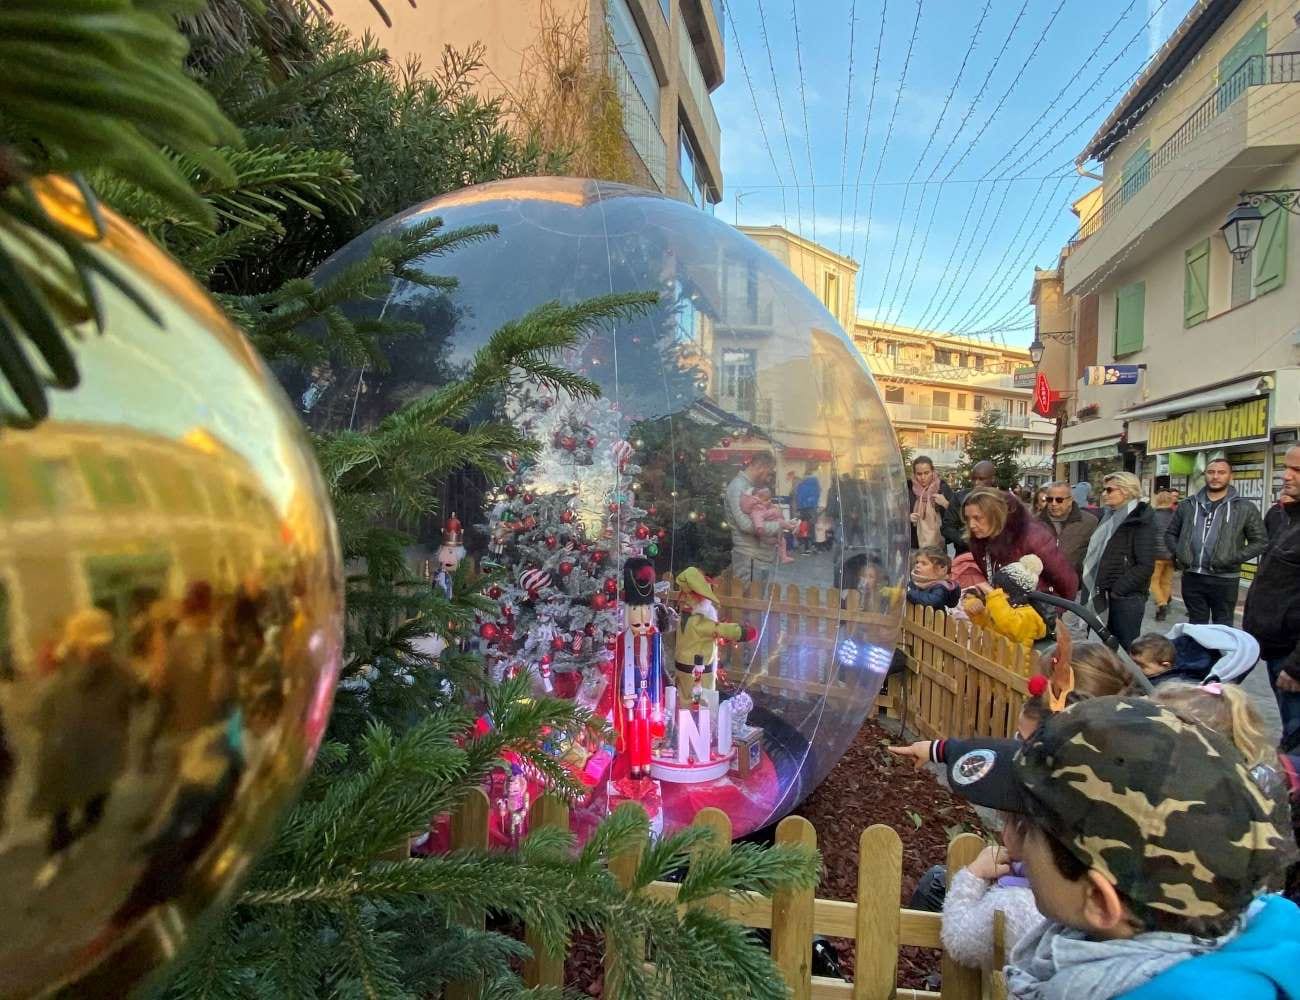 sphère transparent 3m de diamètre fêtes de fin d'année